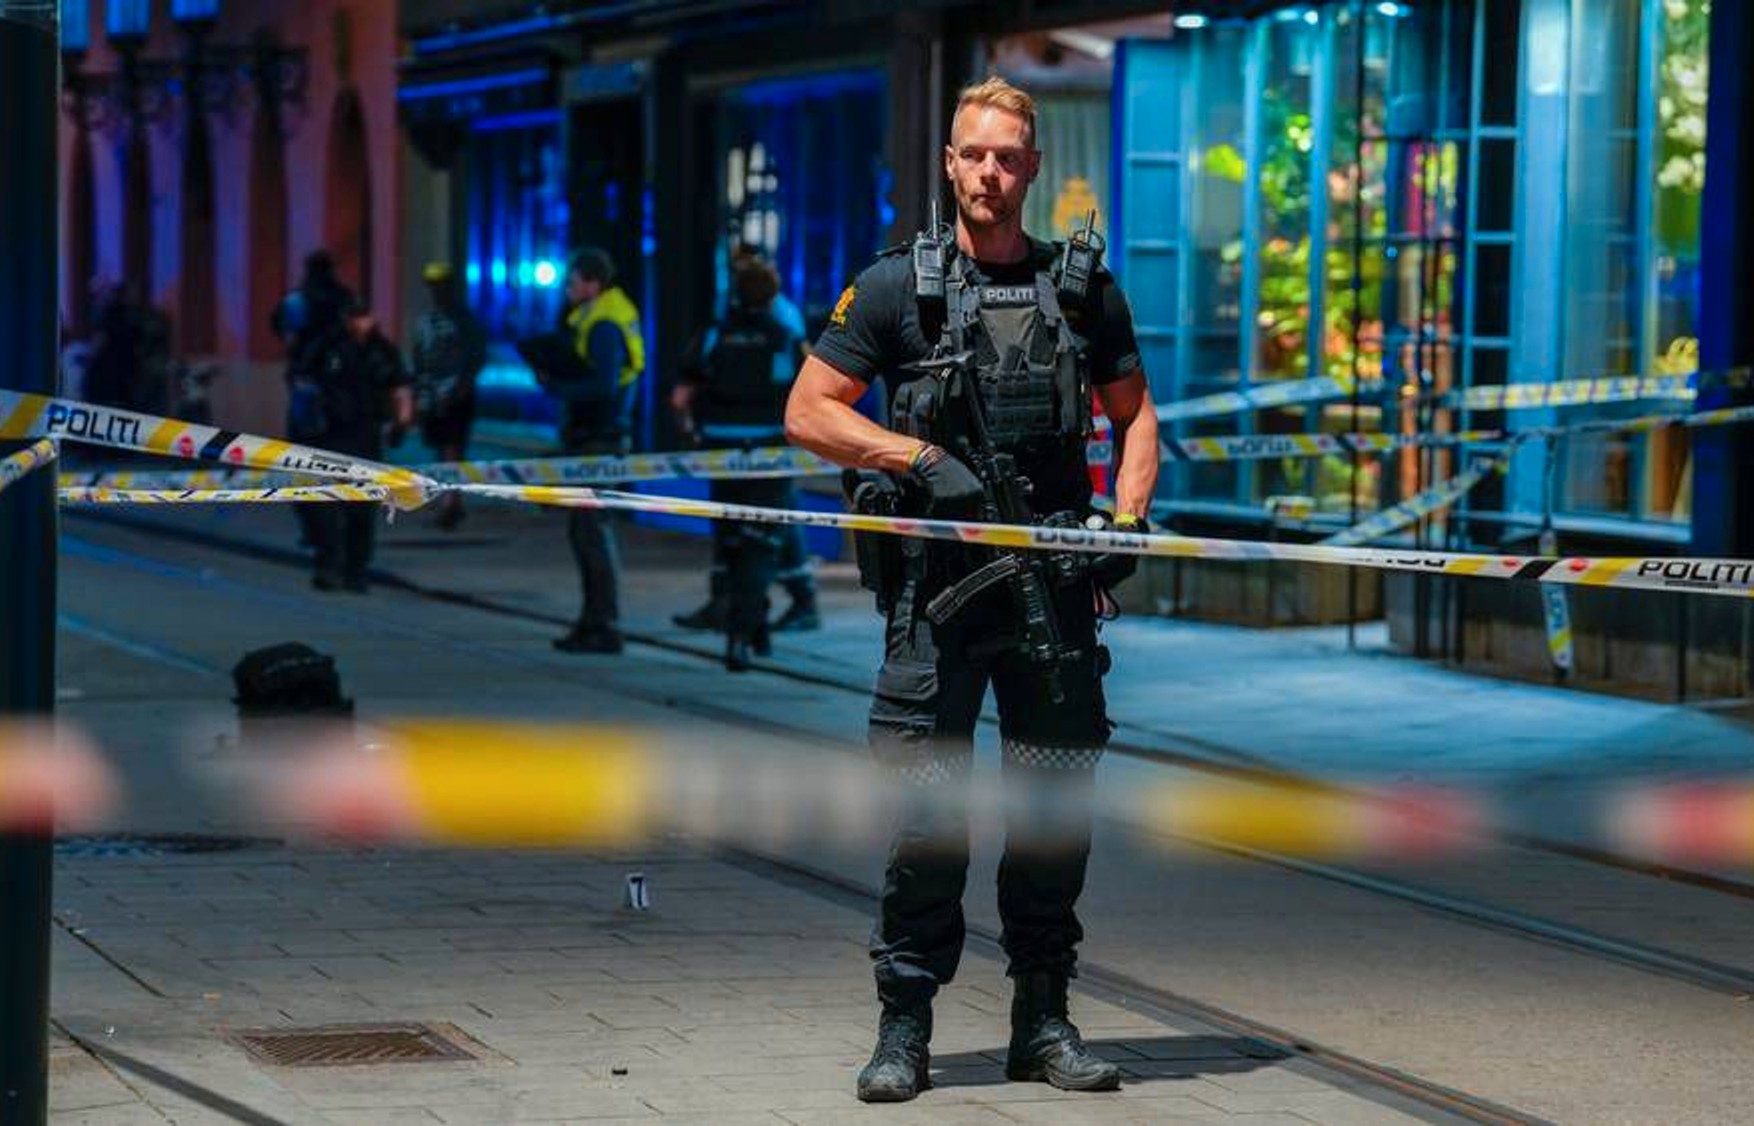 В Осло произошла стрельба в гей-клубе, два человека погибли и как минимум 21 пострадал. Полиция не исключает теракт